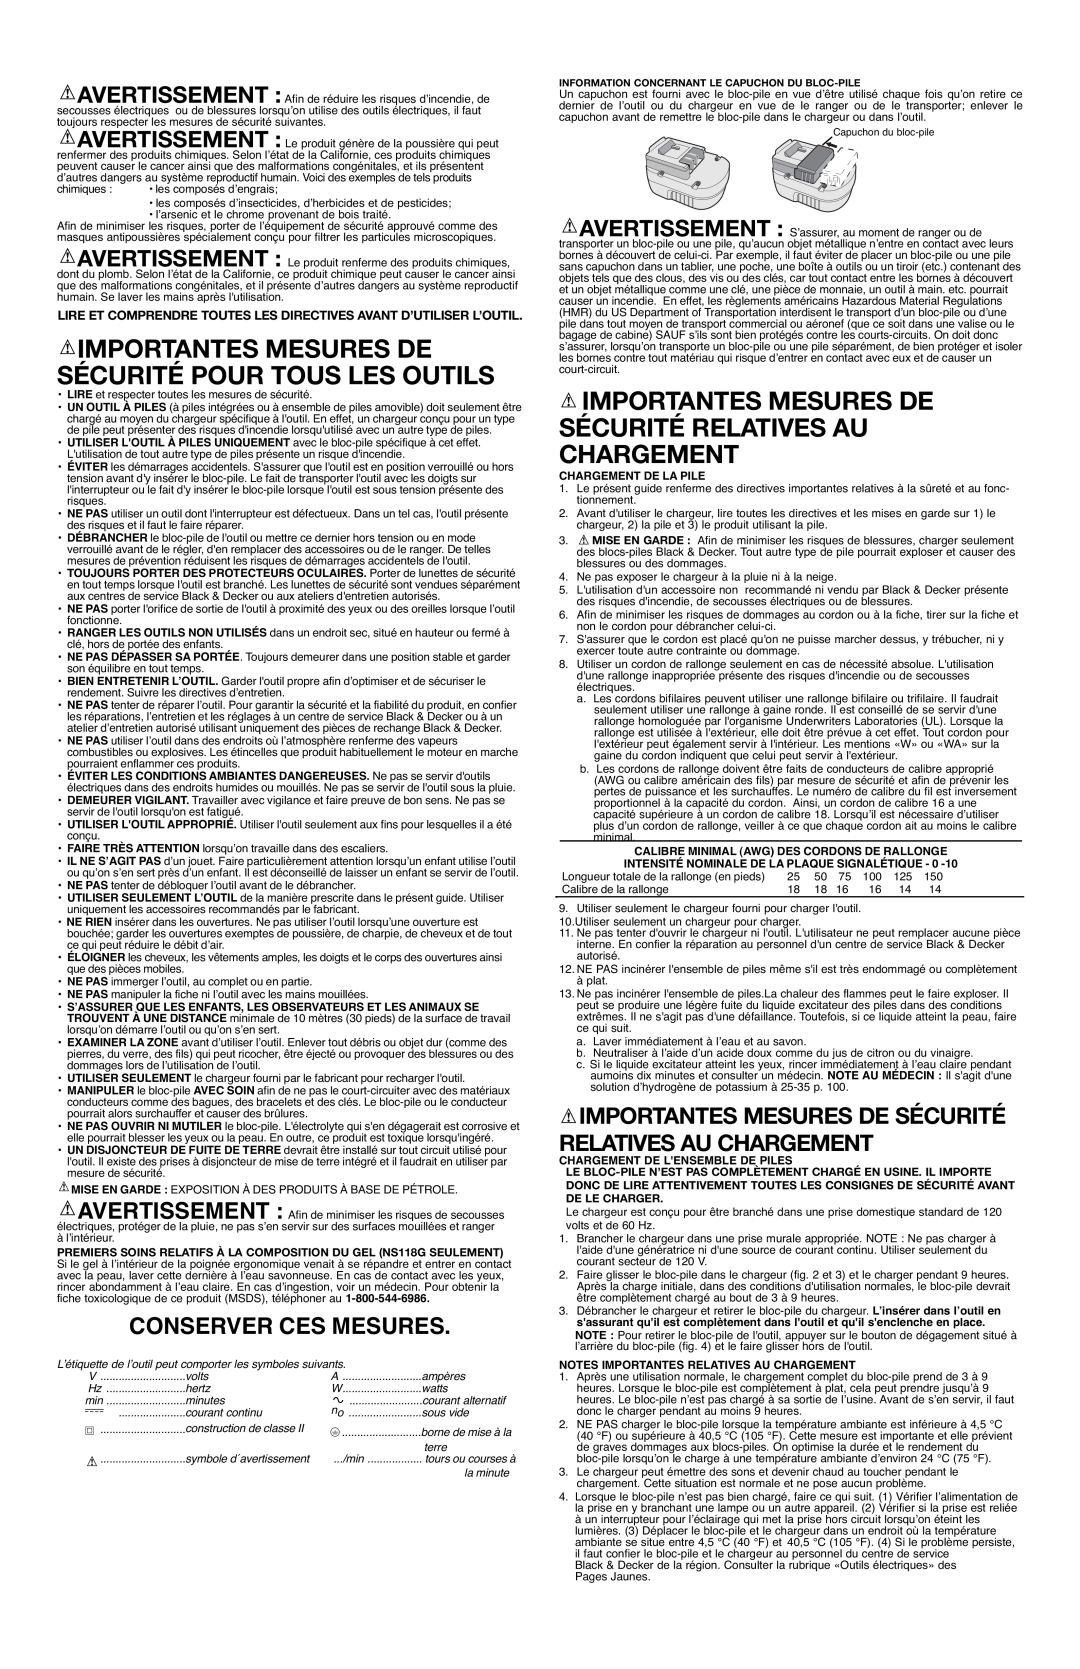 Black & Decker NS118 instruction manual Importantes Mesures De Sécurité Relatives Au Chargement, Conserver Ces Mesures 